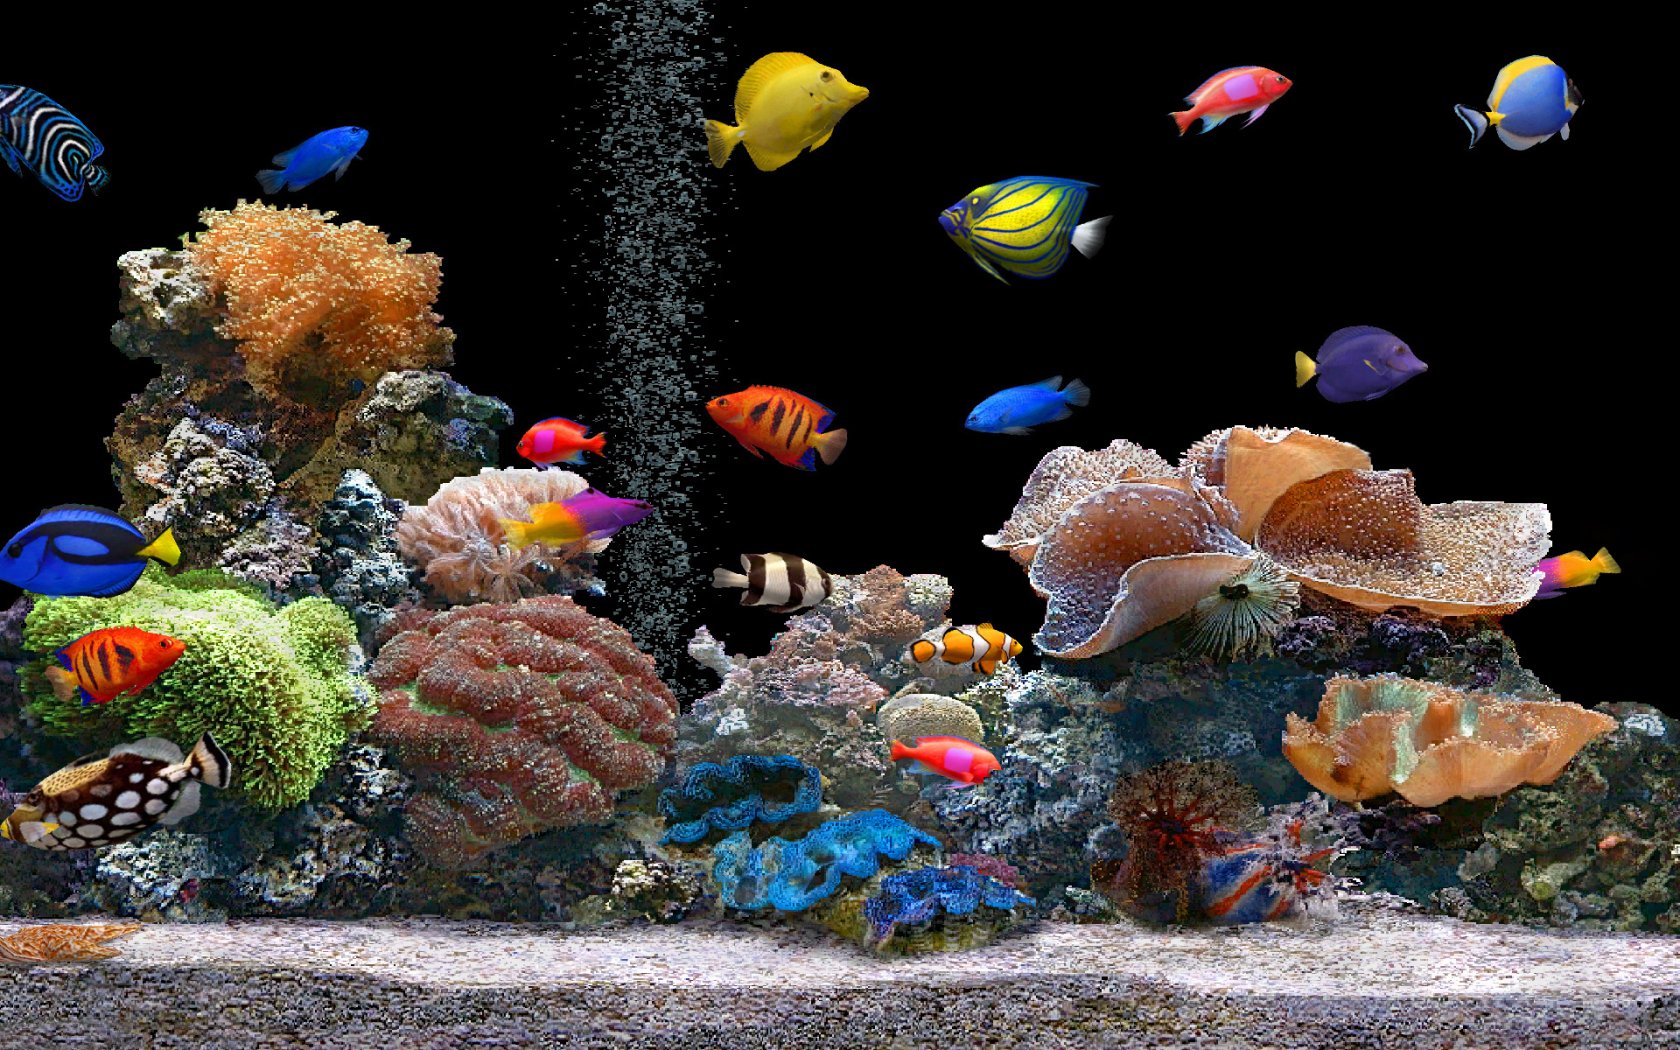 50+] Free 3D Aquarium Wallpaper - WallpaperSafari